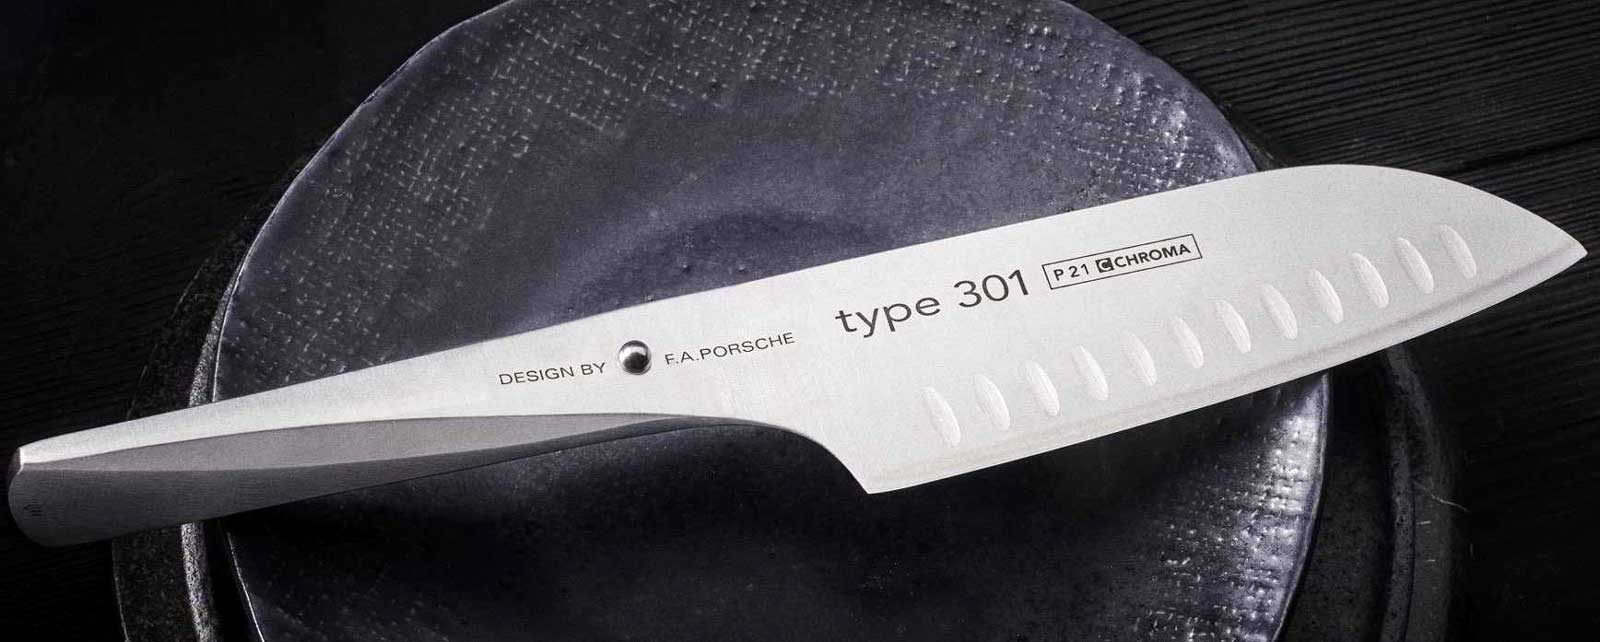 CHROMA type 301 - Design by FA Porsche - couteau de chef Ces couteaux innovants Type 301, concus par la societe de design FA Porsche, ouvrent un nouveau chapitre dans le developpement des couteaux de cuisine.